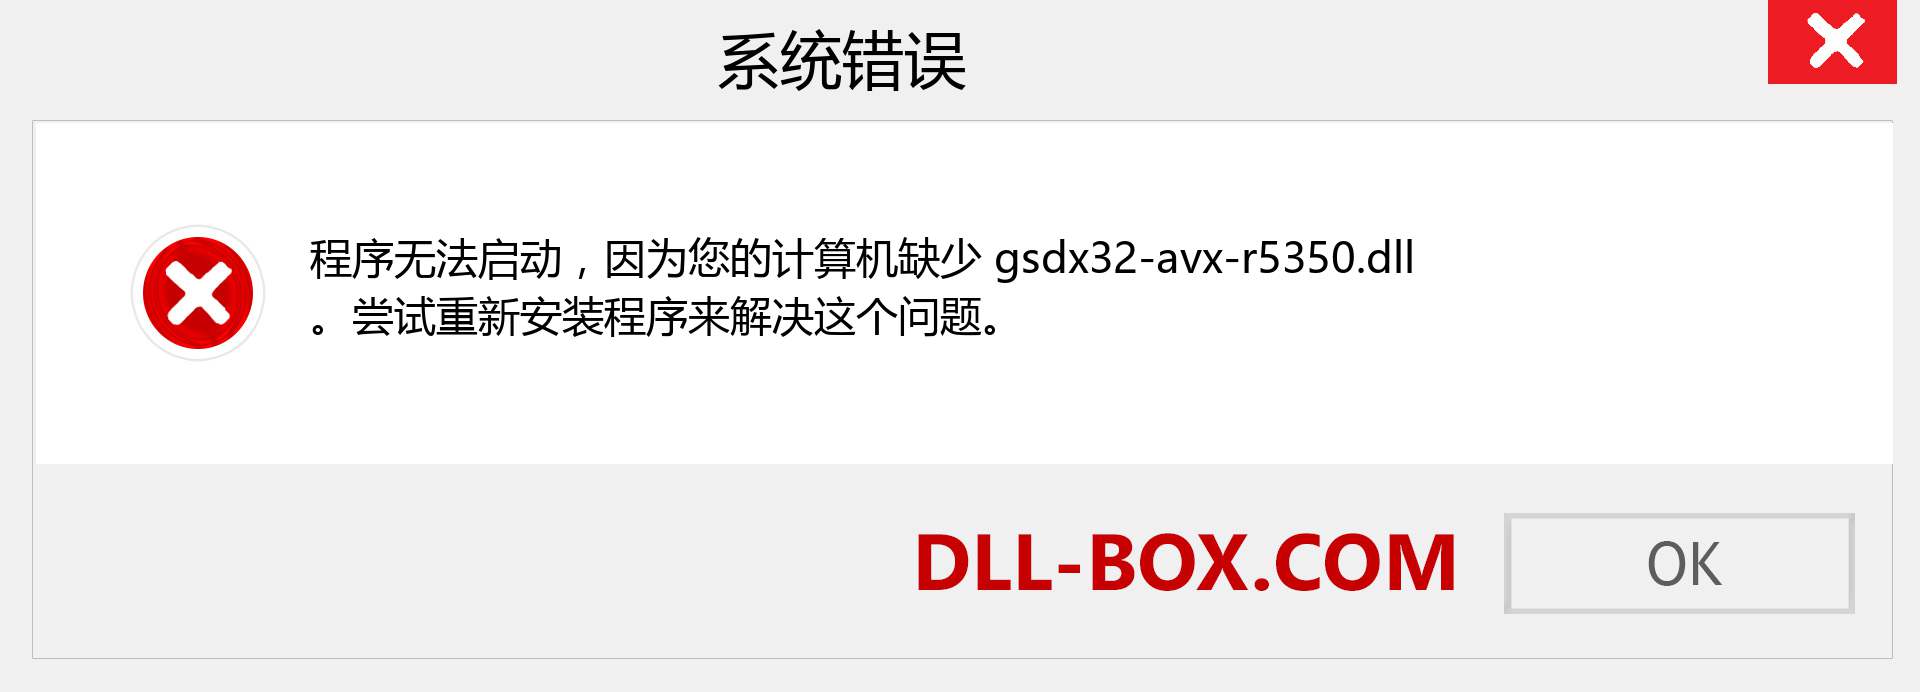 gsdx32-avx-r5350.dll 文件丢失？。 适用于 Windows 7、8、10 的下载 - 修复 Windows、照片、图像上的 gsdx32-avx-r5350 dll 丢失错误